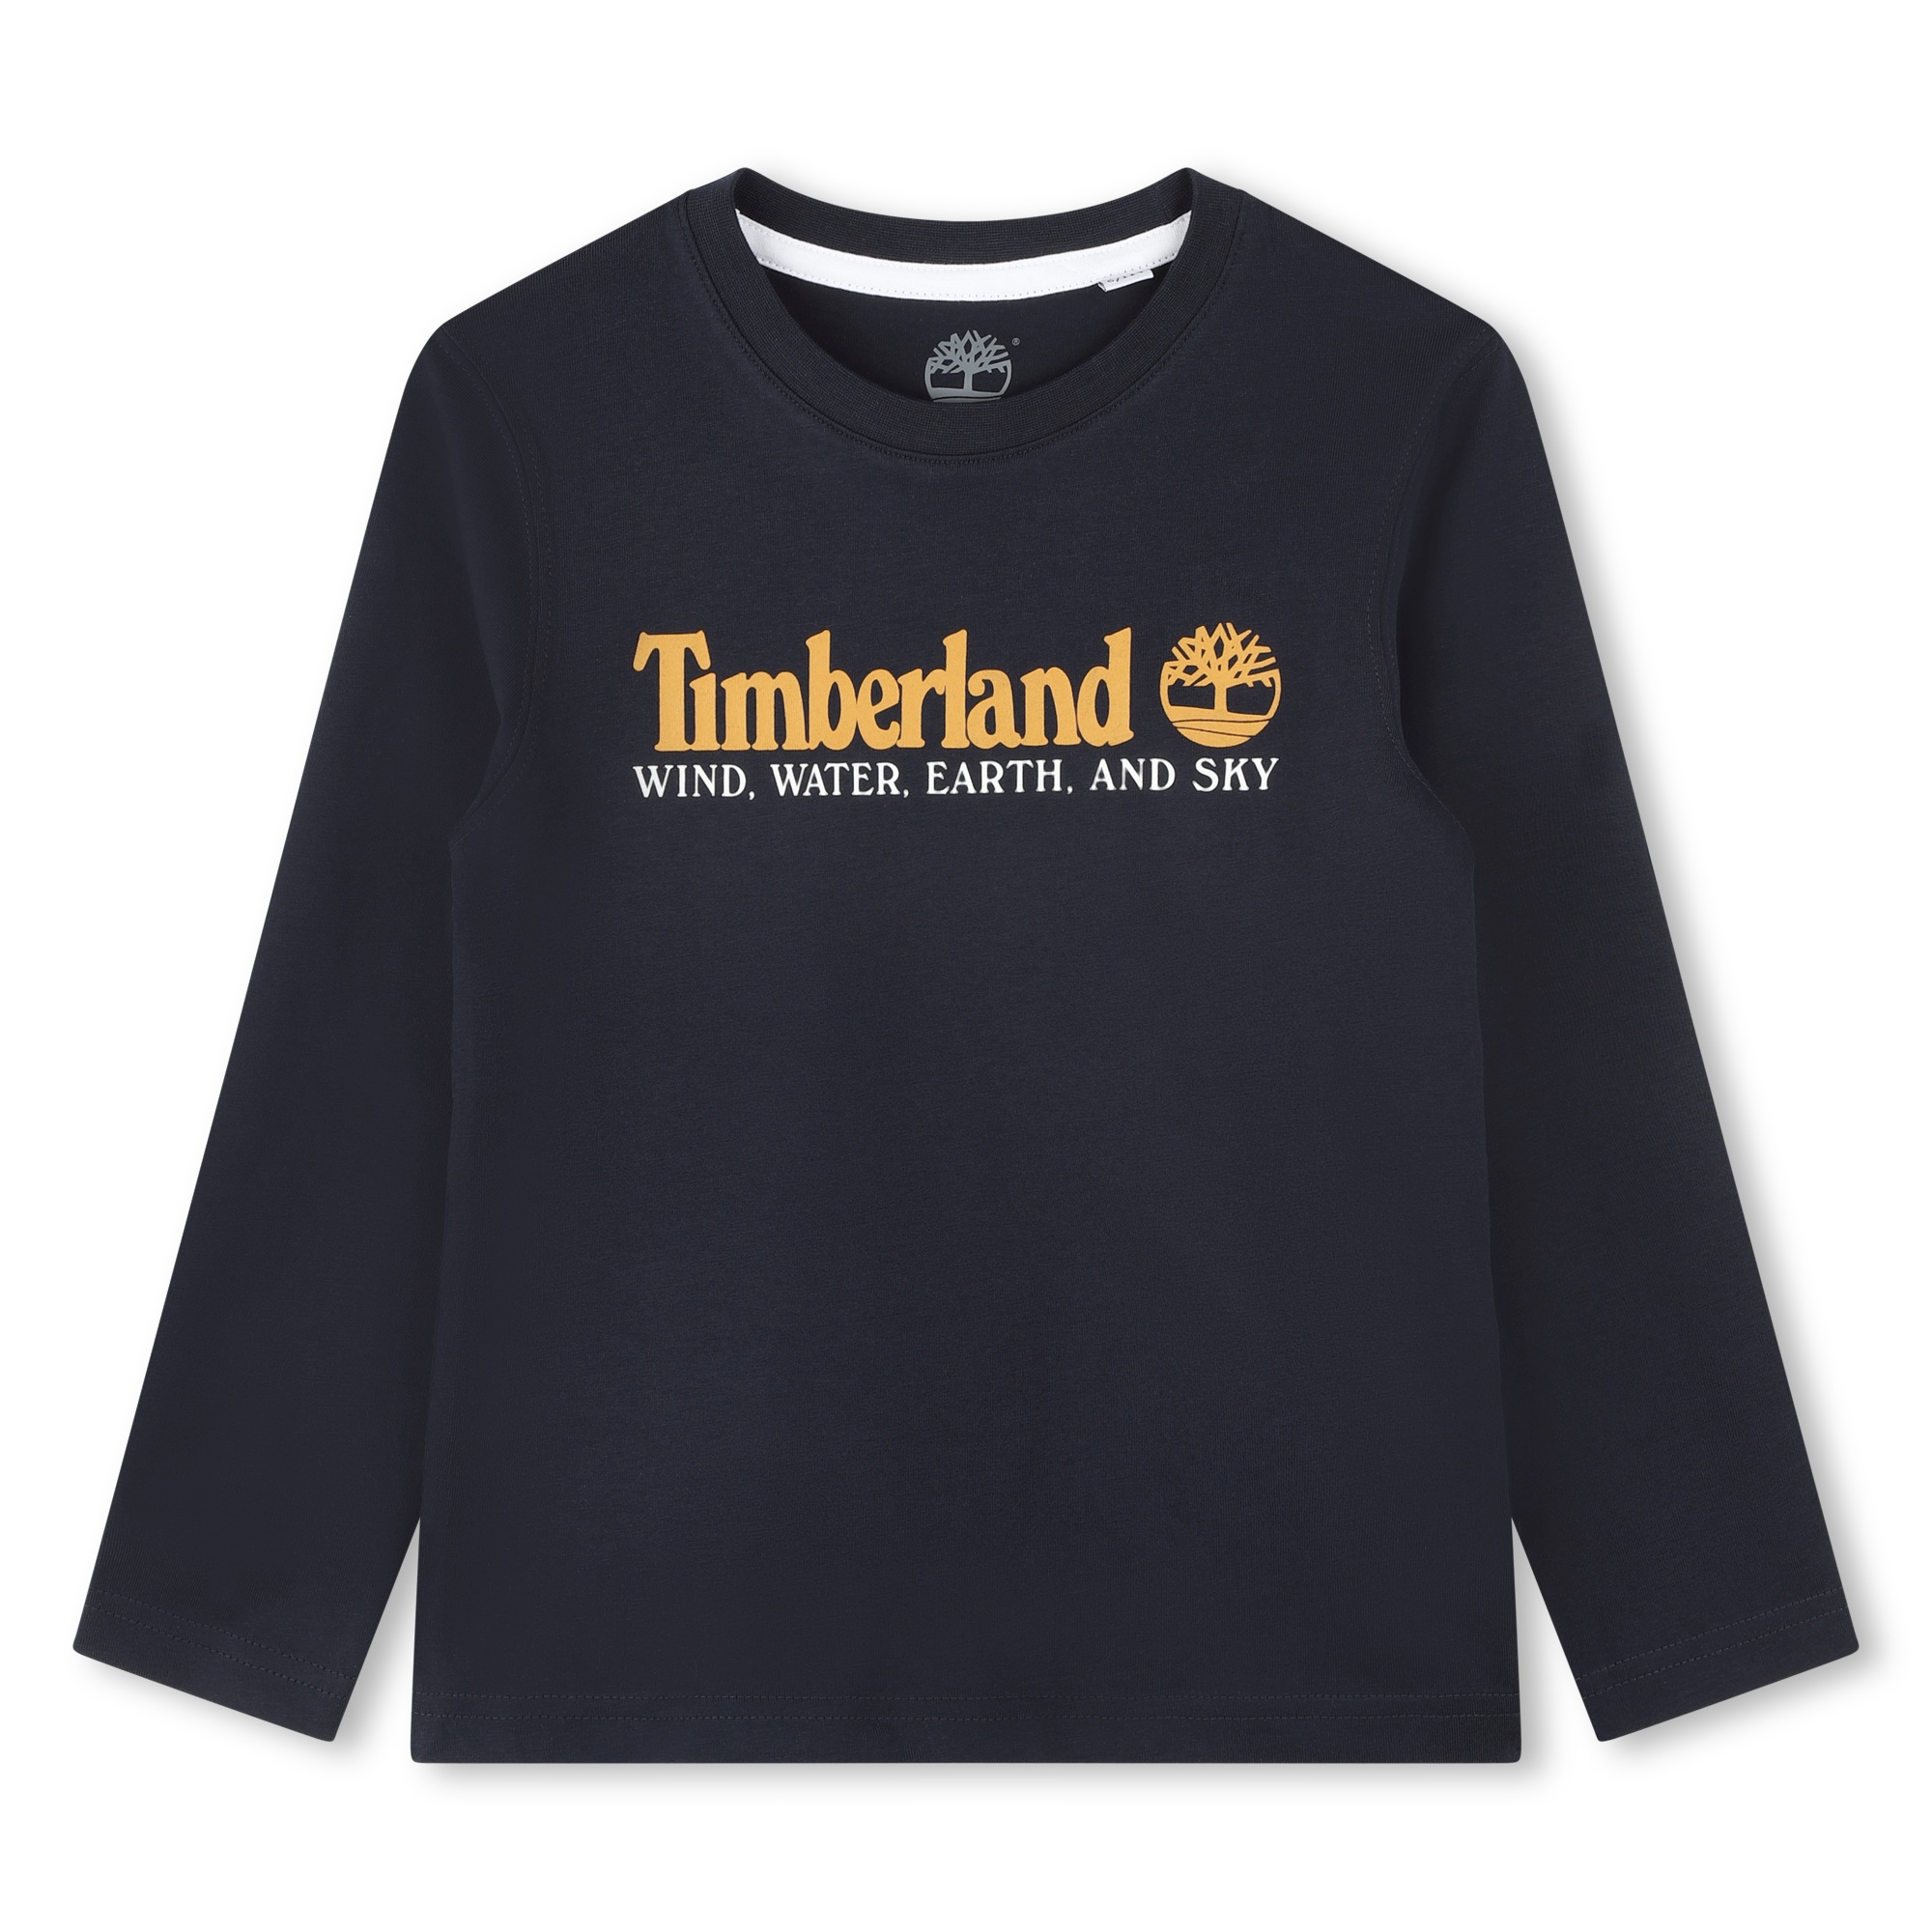 Langarm-Shirt mit Print TIMBERLAND Für JUNGE